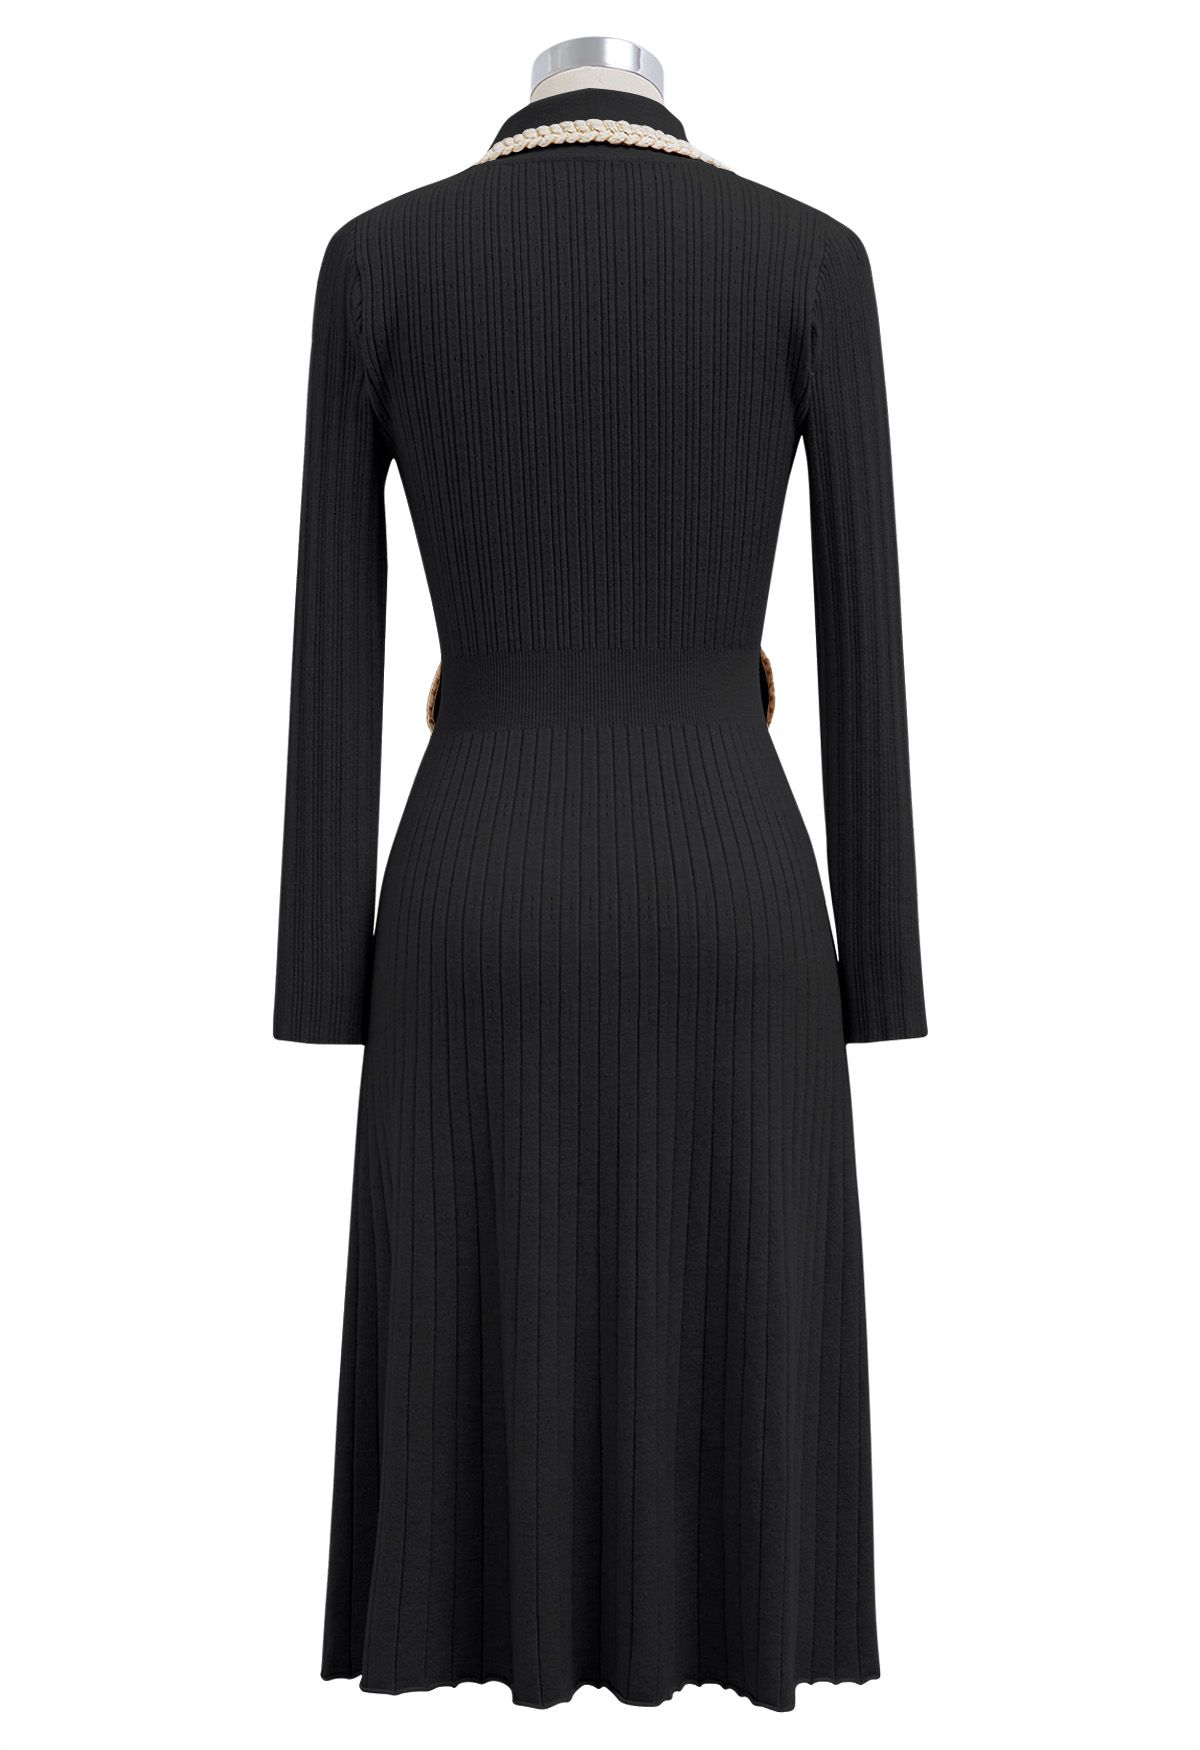 فستان متوسط الطول منسوج بحواف مضفرة وياقة باللون الأسود